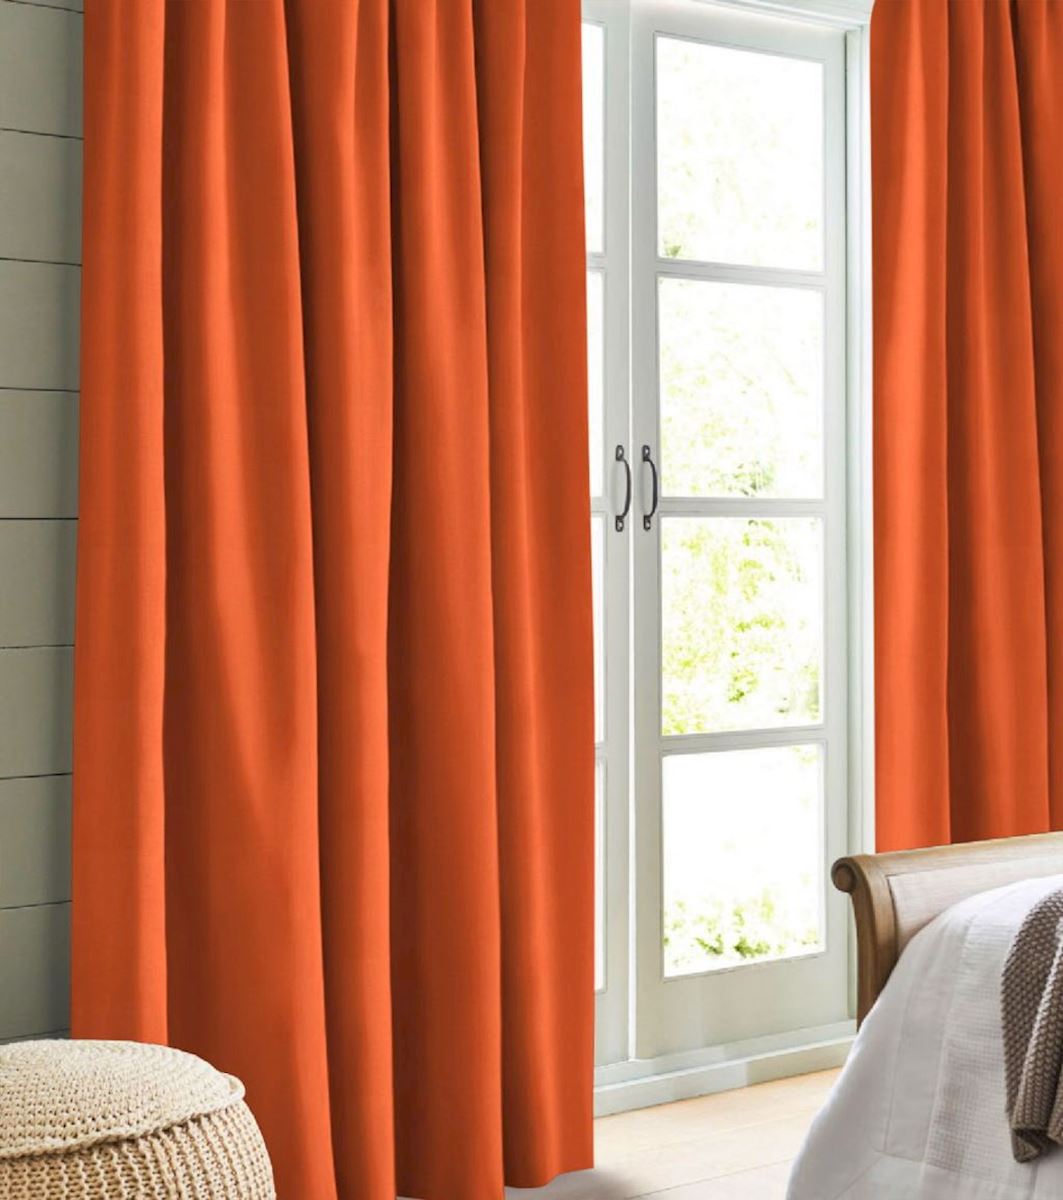 Night curtain orange Primus